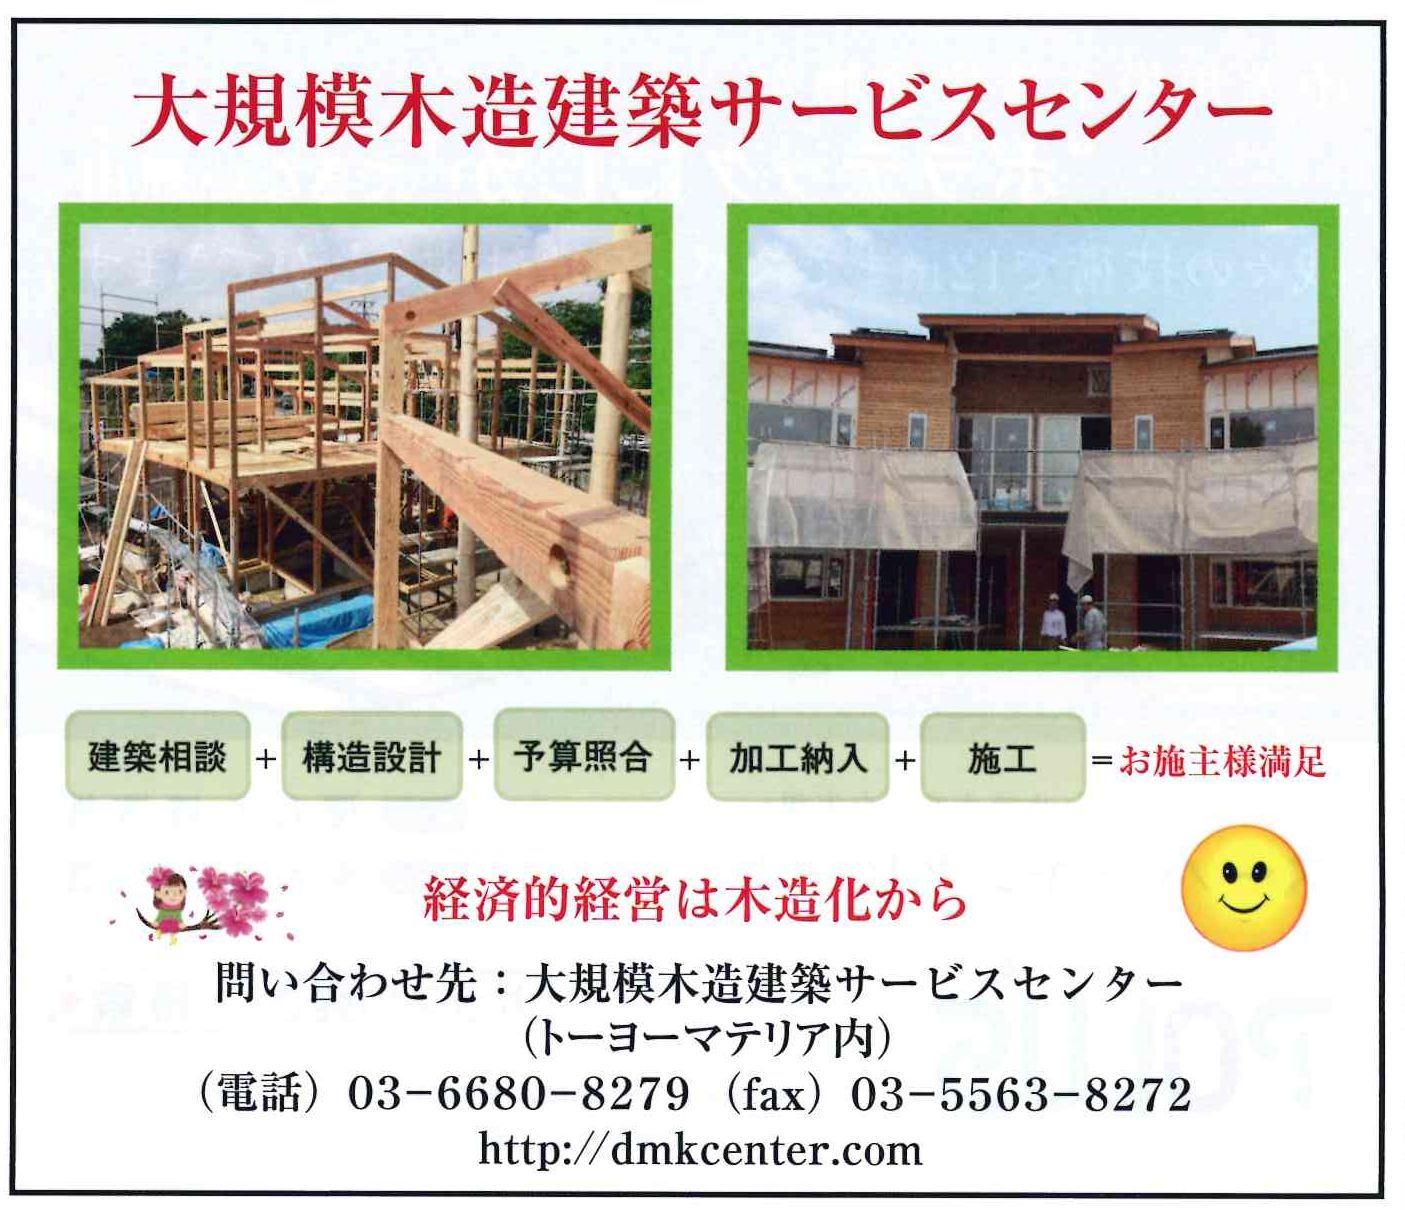 20150730日刊木材新聞-大規模木造建築サービスセンター広告